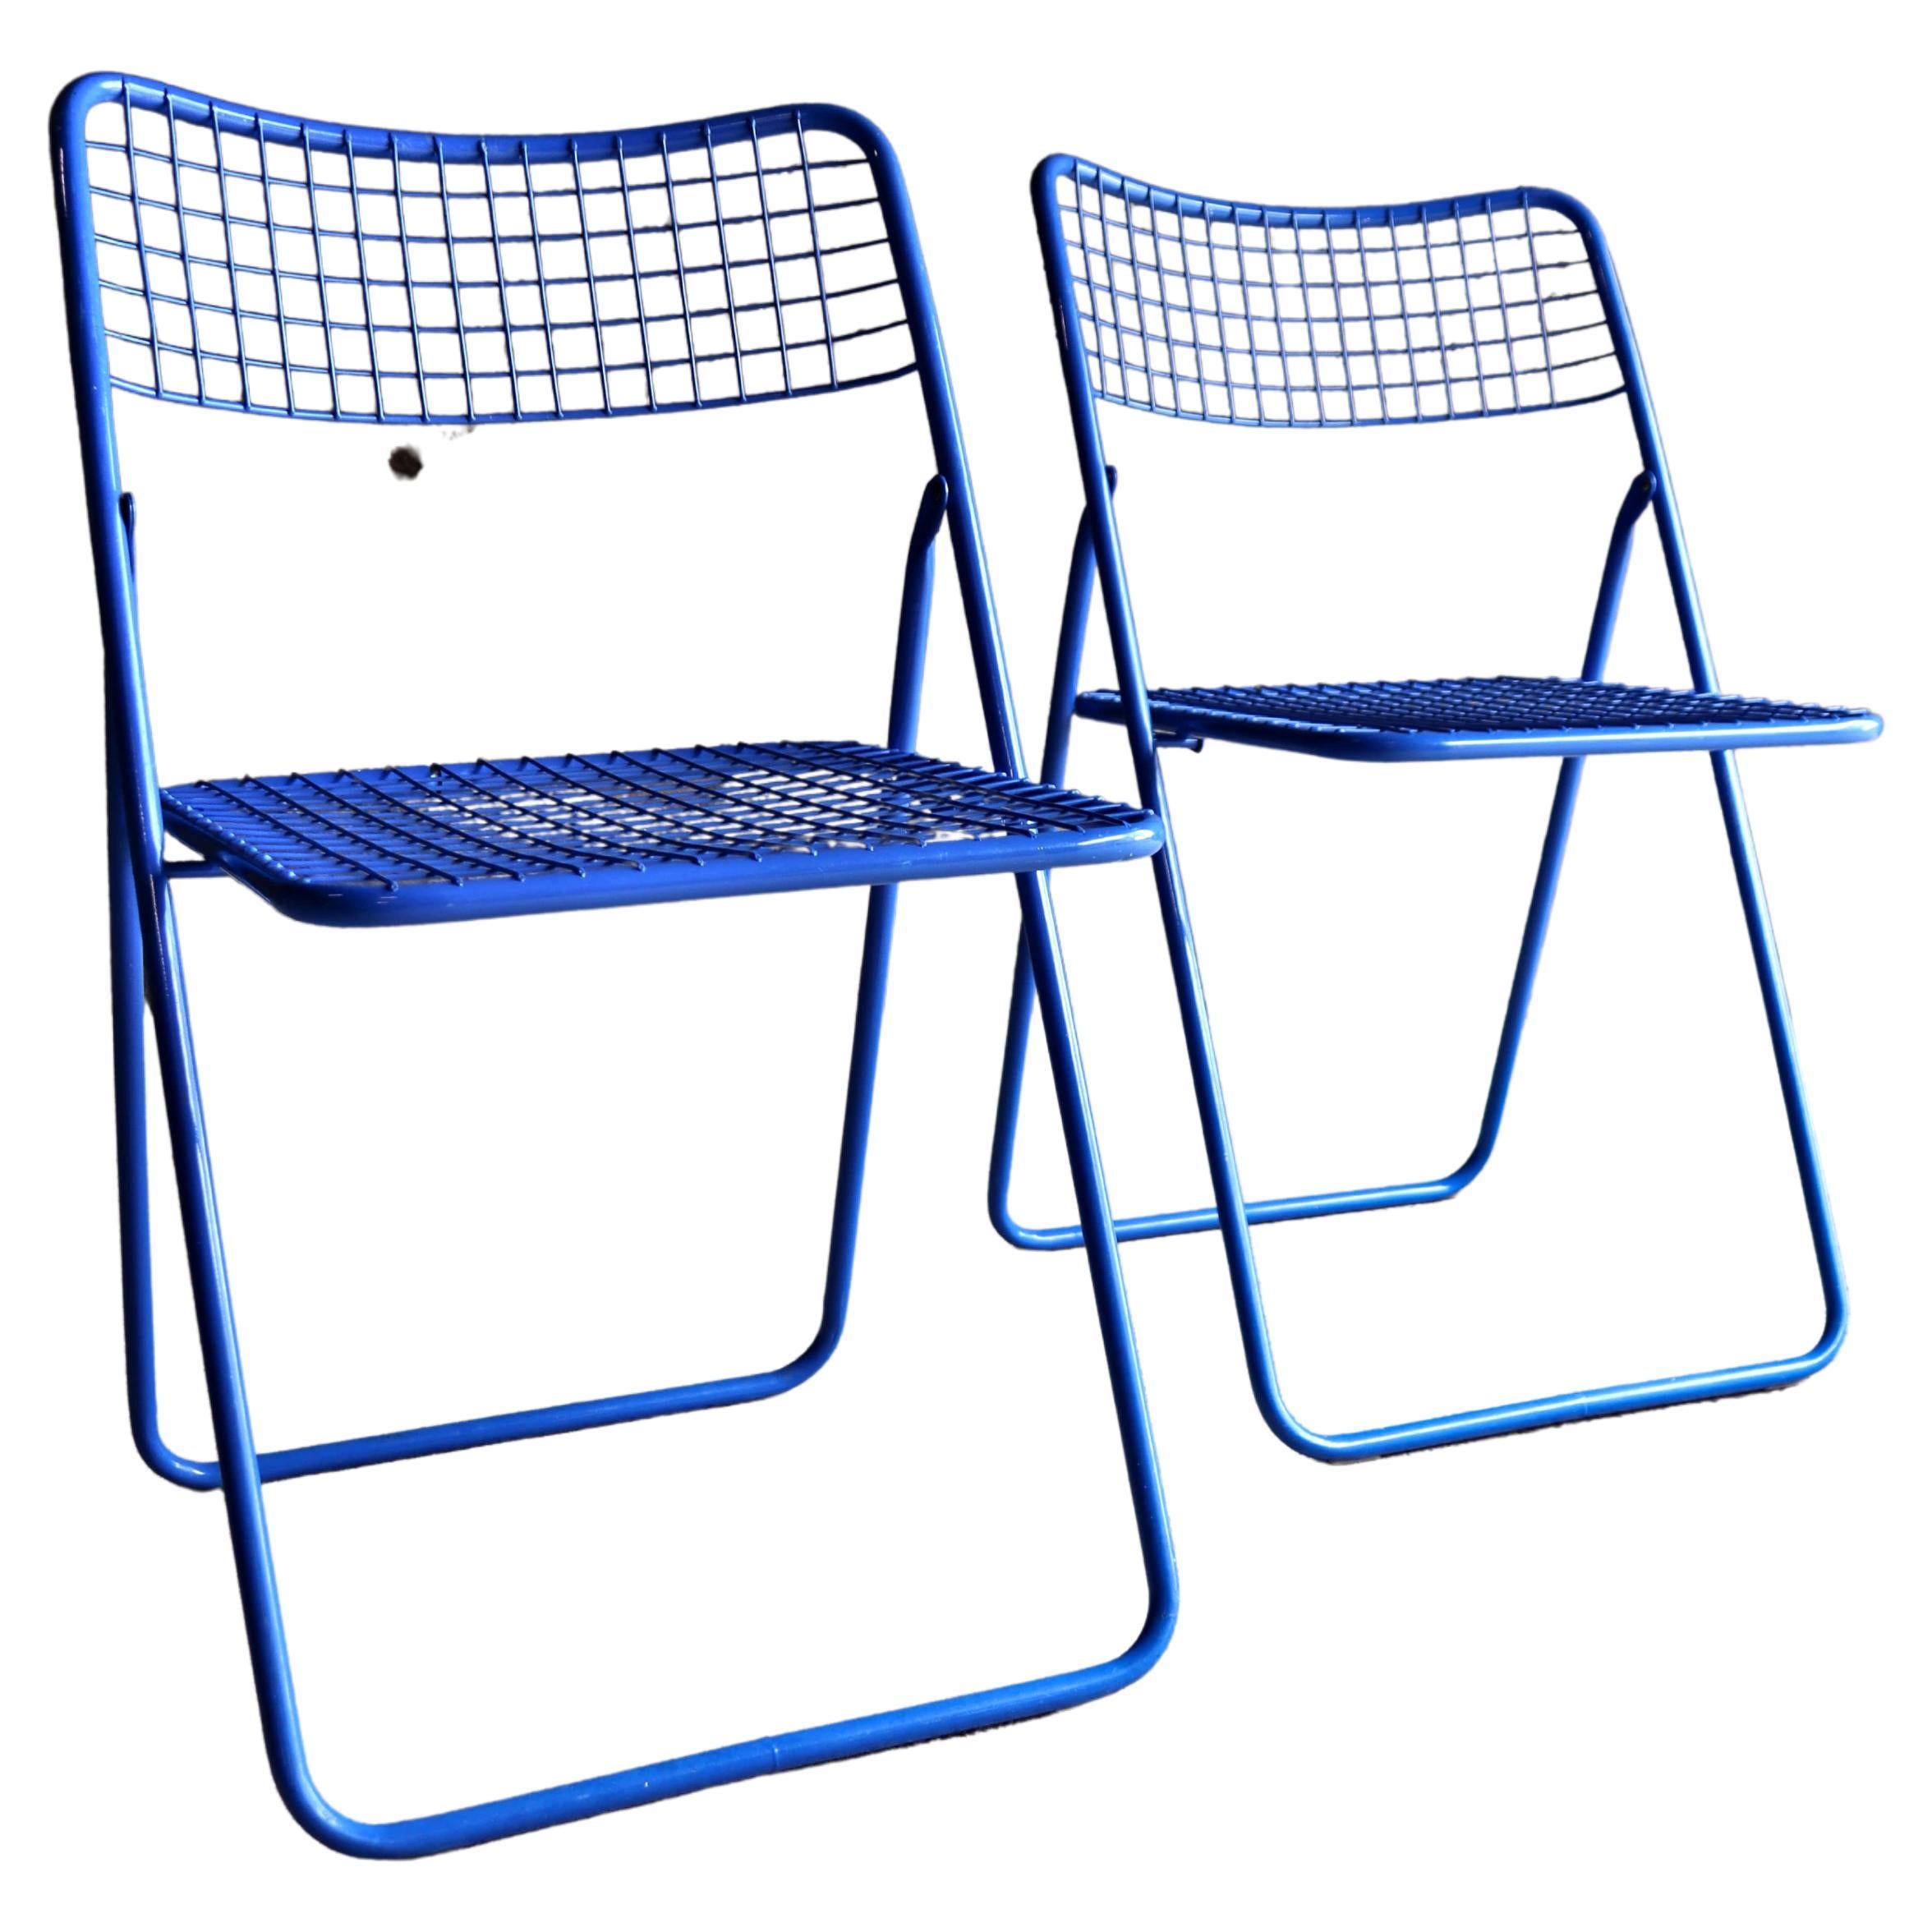 Ikea, Rappen, Ted Net Chair, Blue, Niels Gammelgaard, 1976